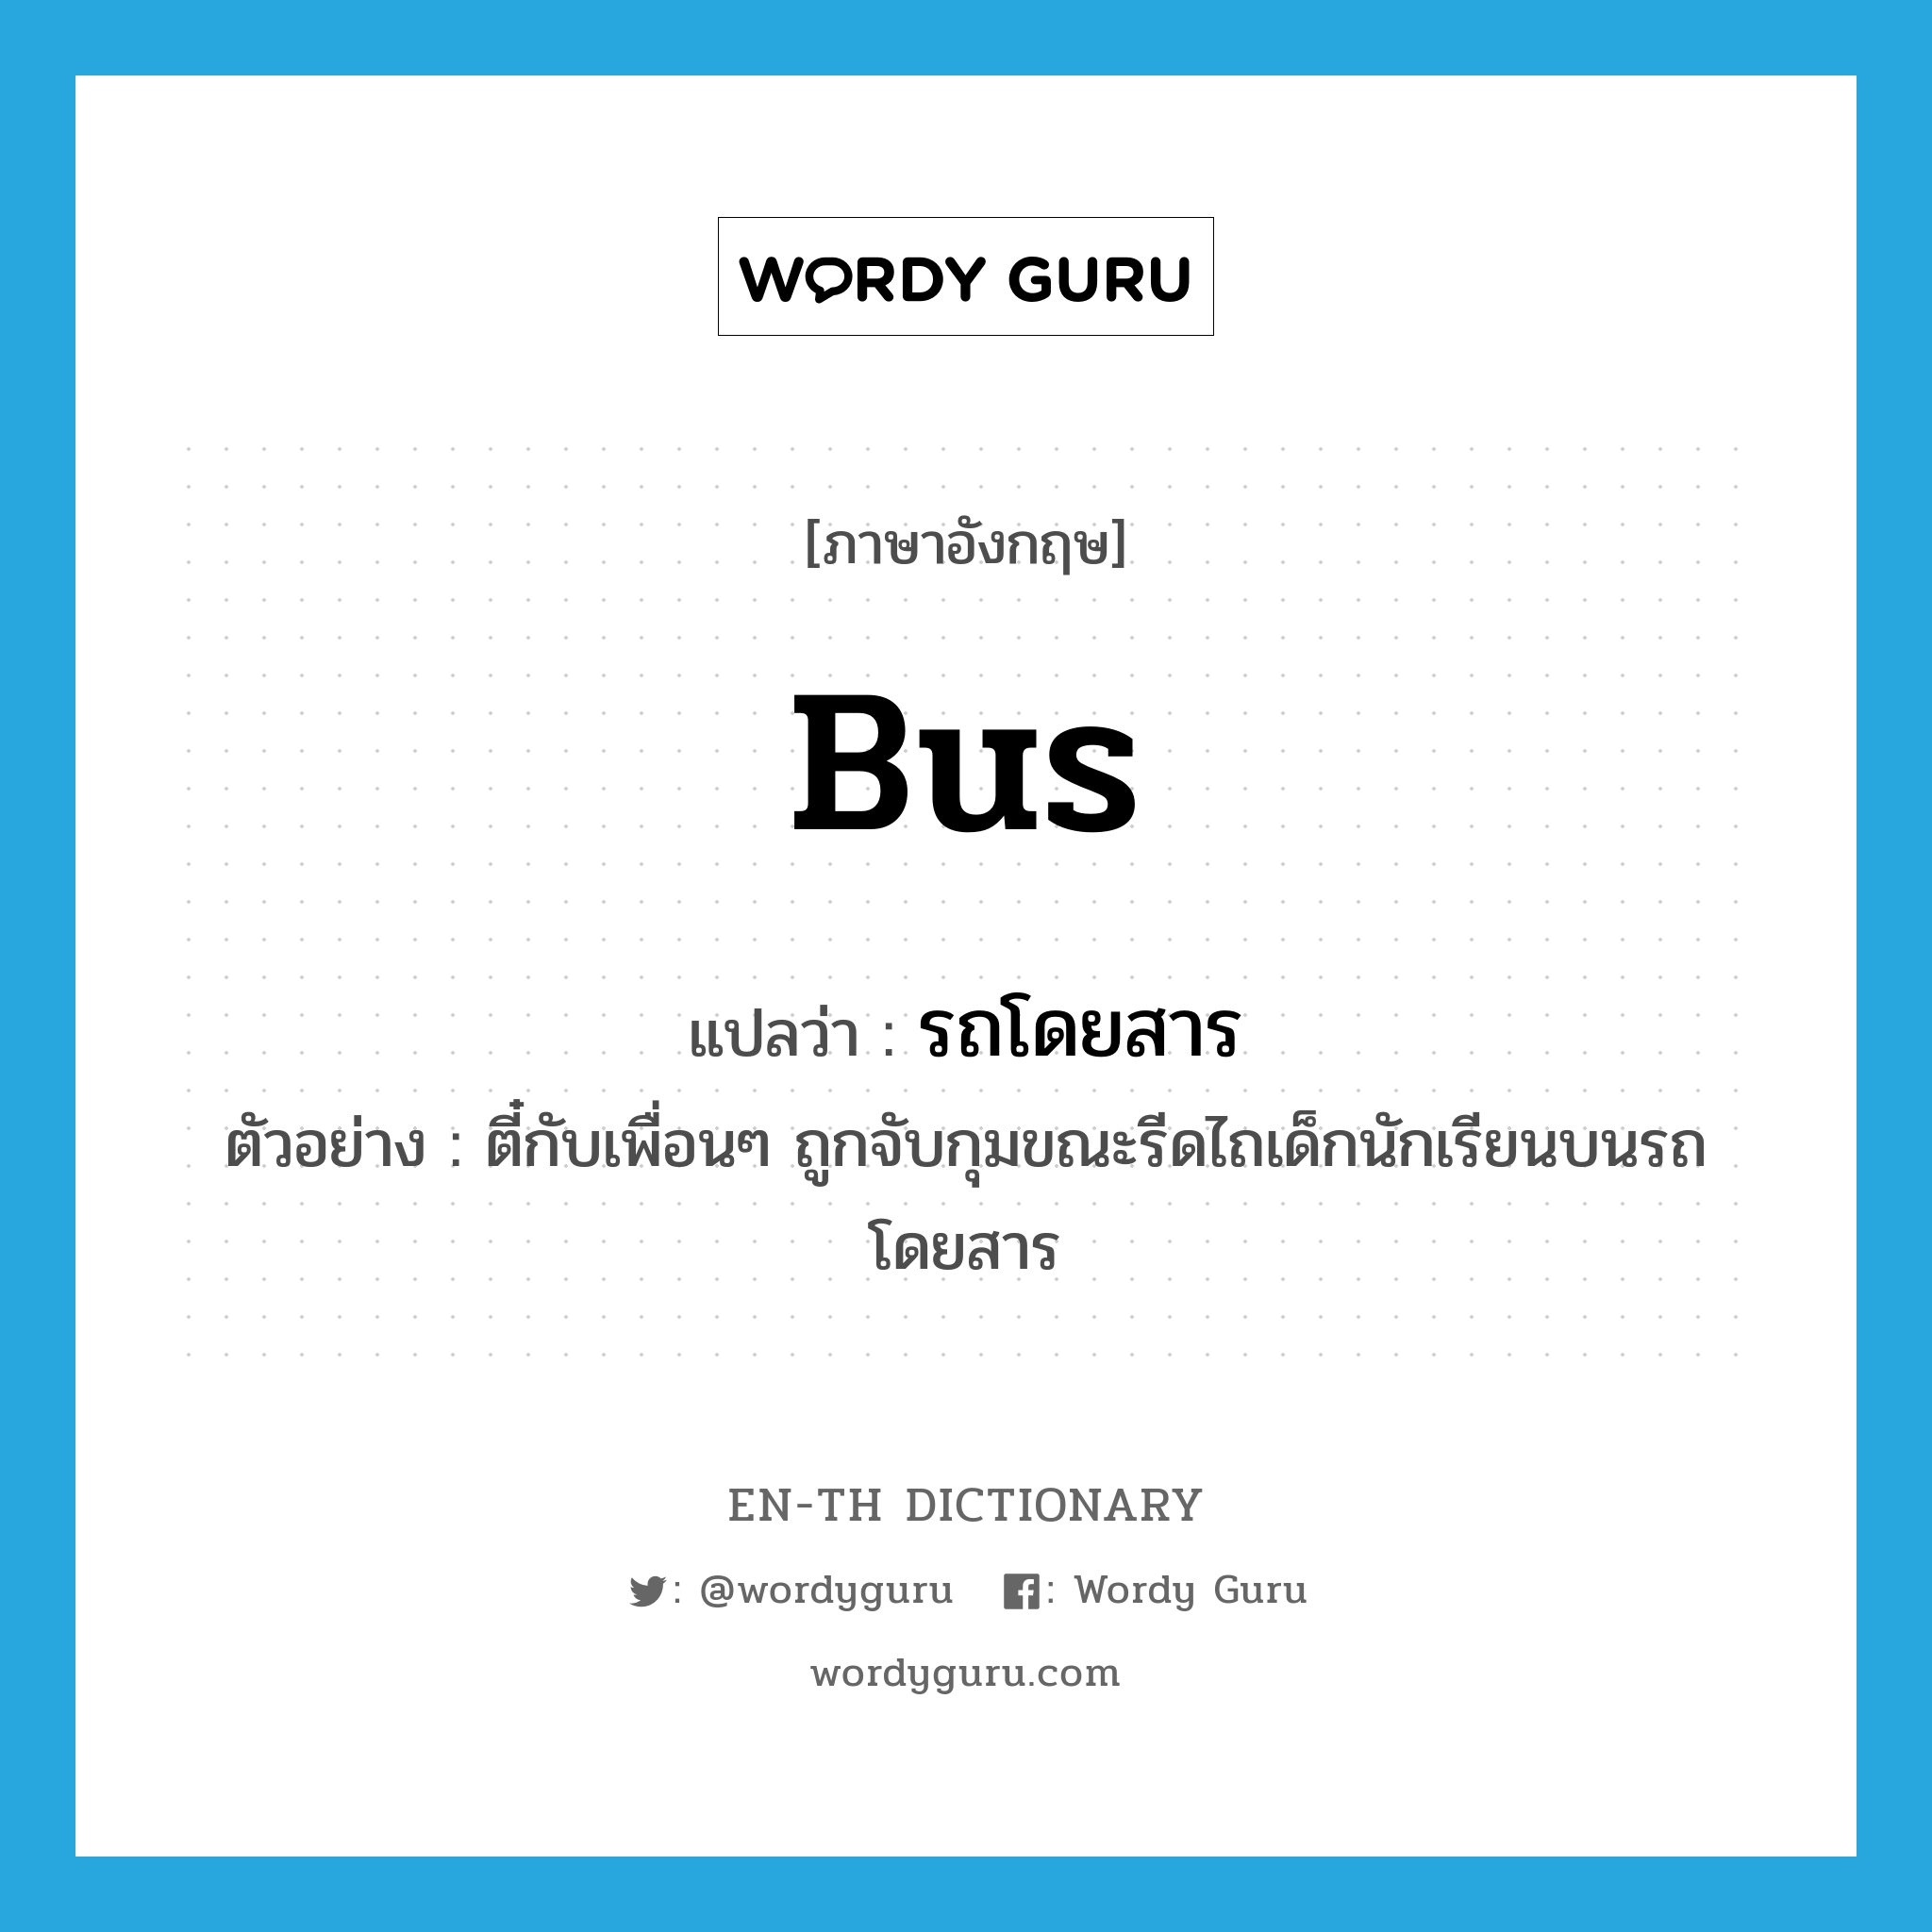 bus แปลว่า?, คำศัพท์ภาษาอังกฤษ bus แปลว่า รถโดยสาร ประเภท N ตัวอย่าง ตี๋กับเพื่อนๆ ถูกจับกุมขณะรีดไถเด็กนักเรียนบนรถโดยสาร หมวด N